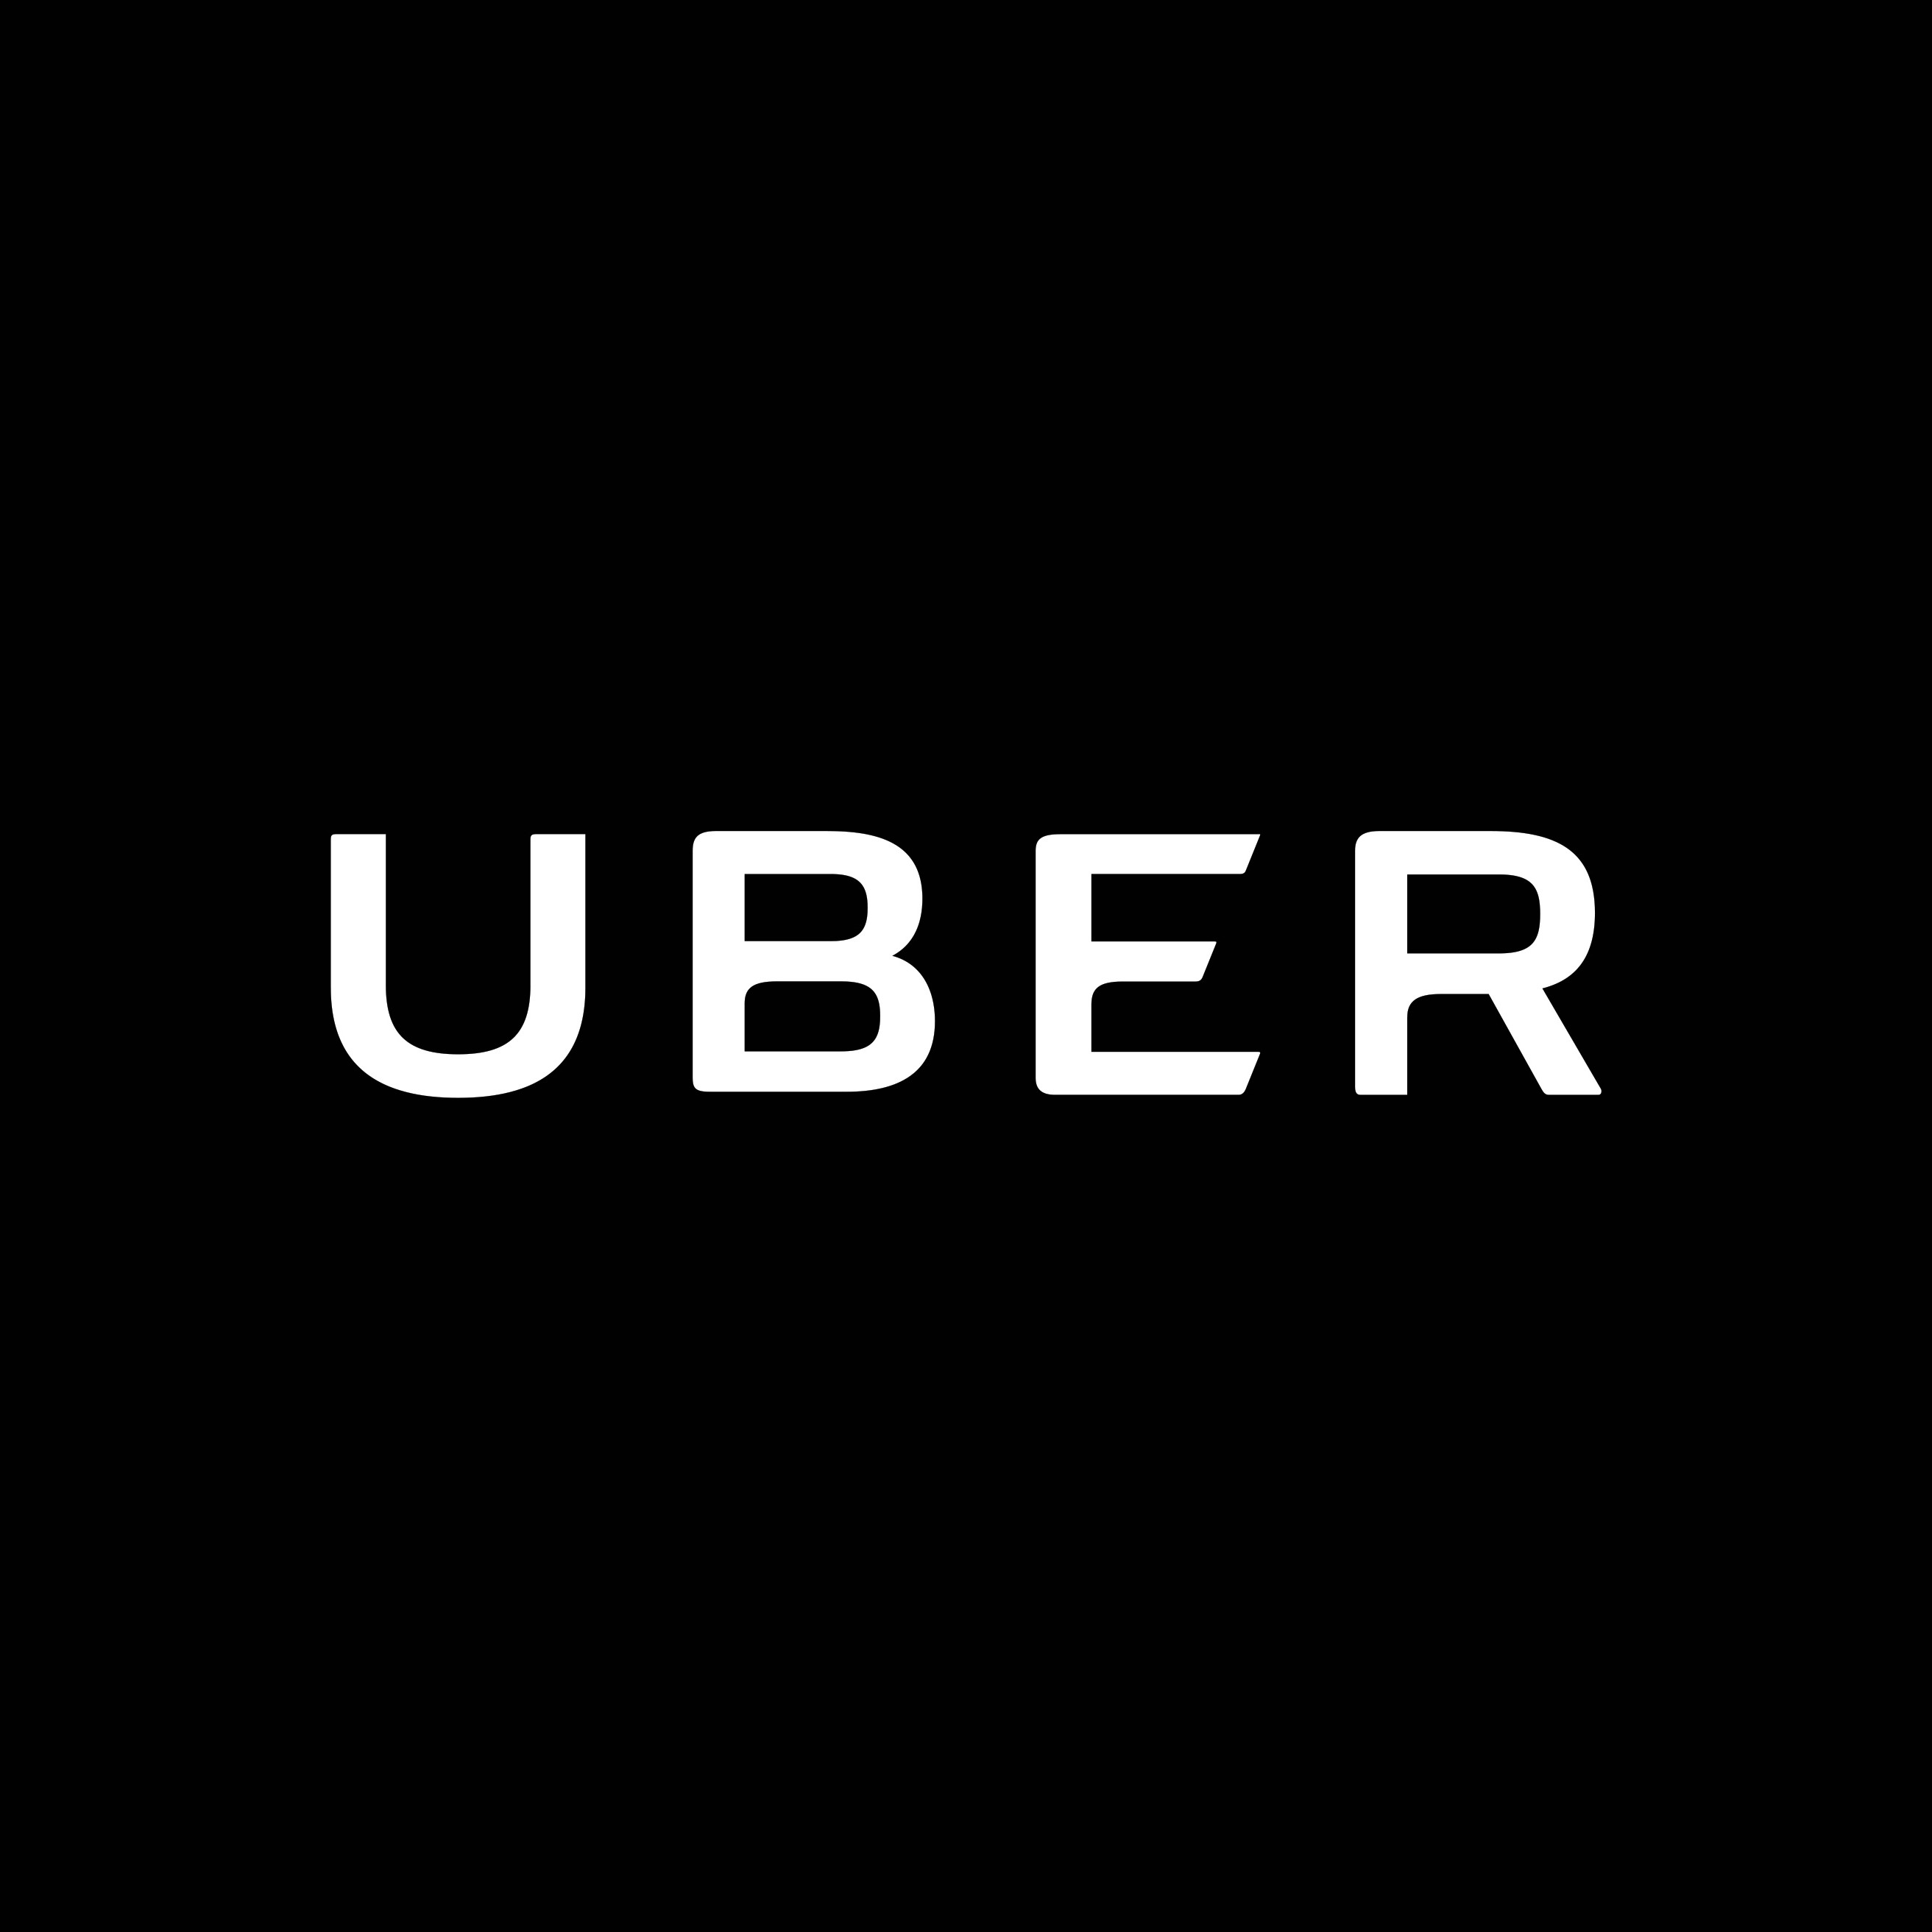 uber-serp-logo-3e94f6fec6